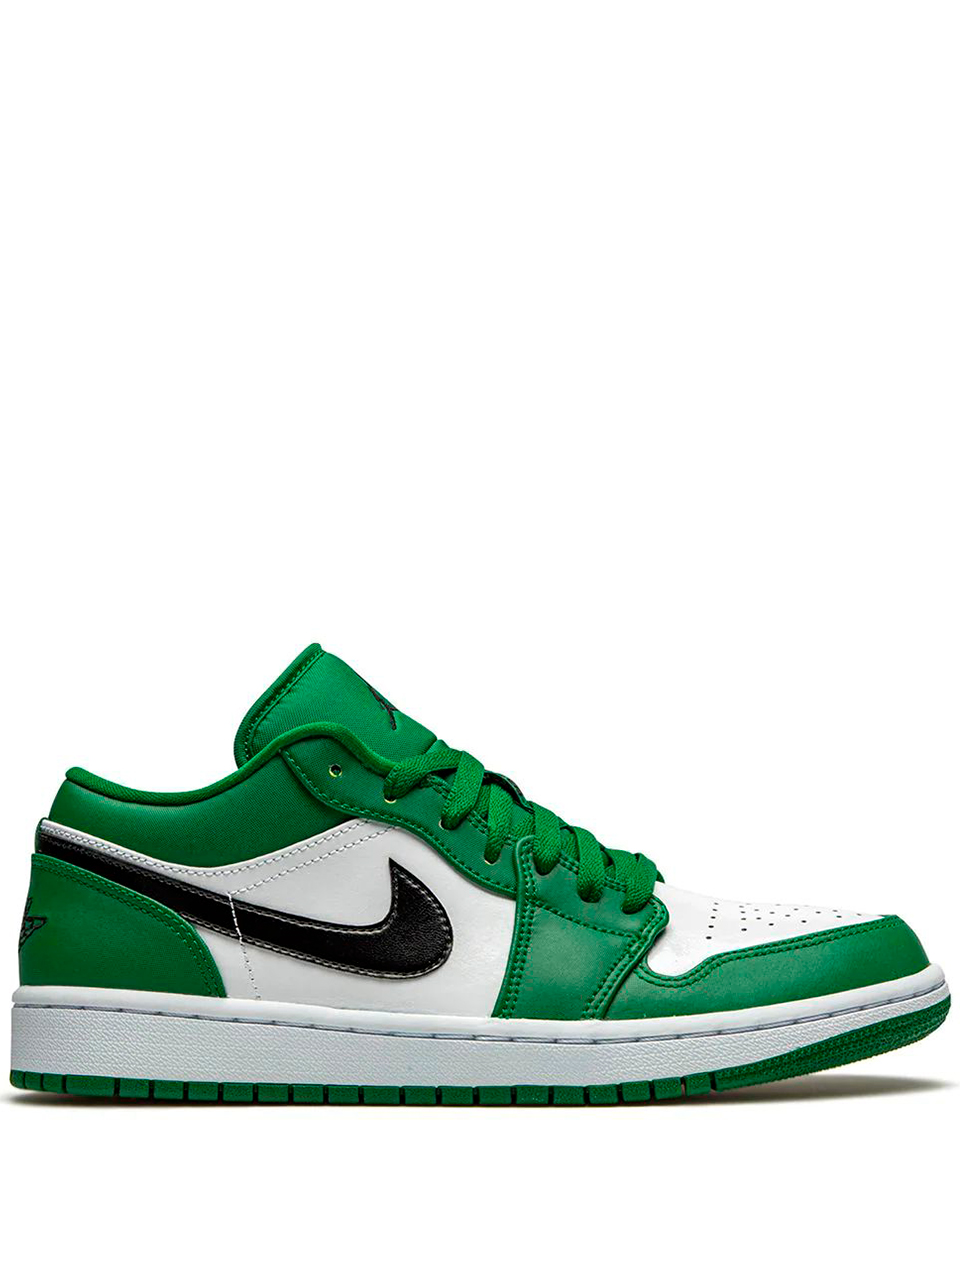 Imagem de: Tênis Nike Air Jordan 1 Low Verde